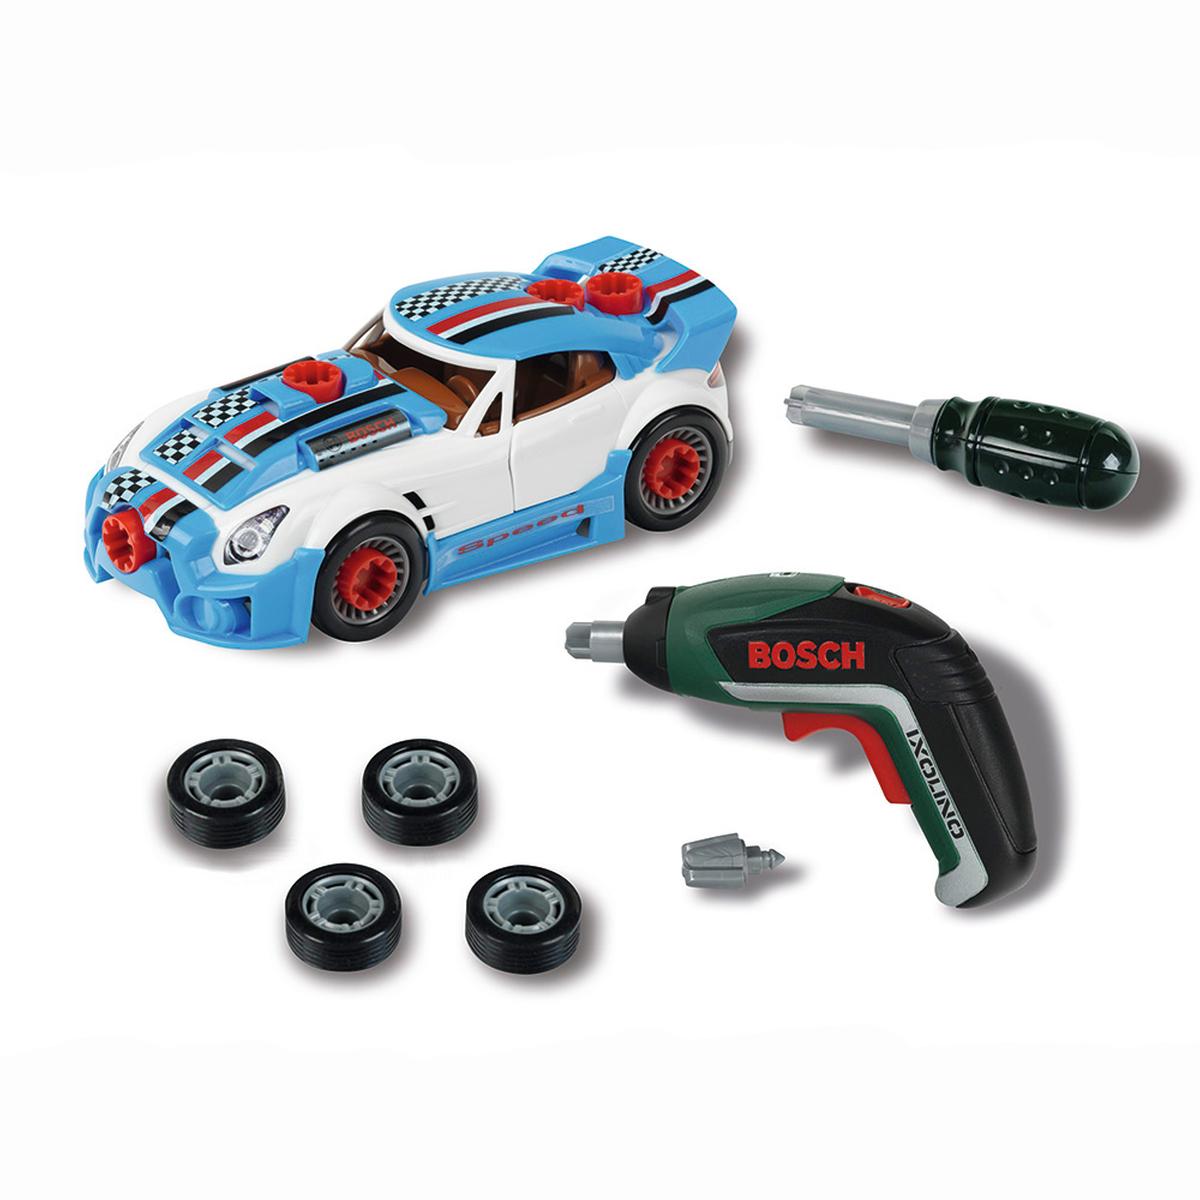 Bosch - Set de Tuneado | Bosch | Toys"R"Us España